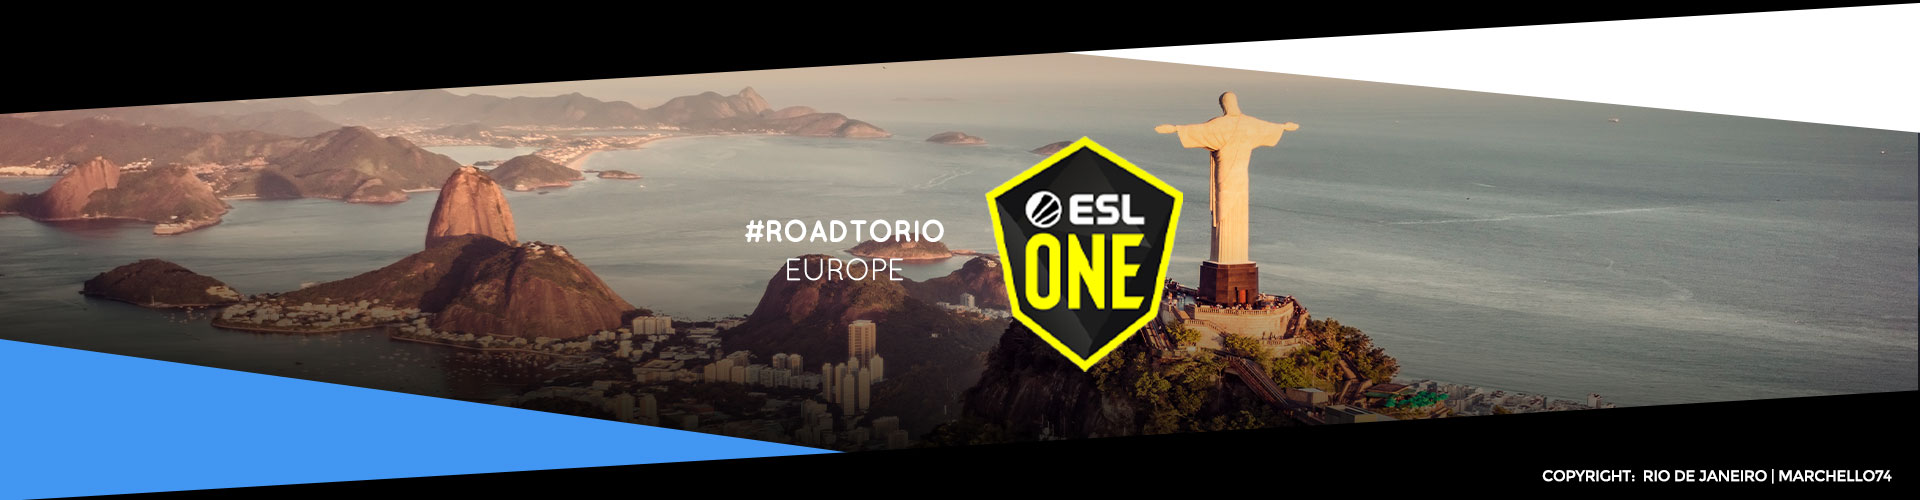 ESL One Road to Rio Europe